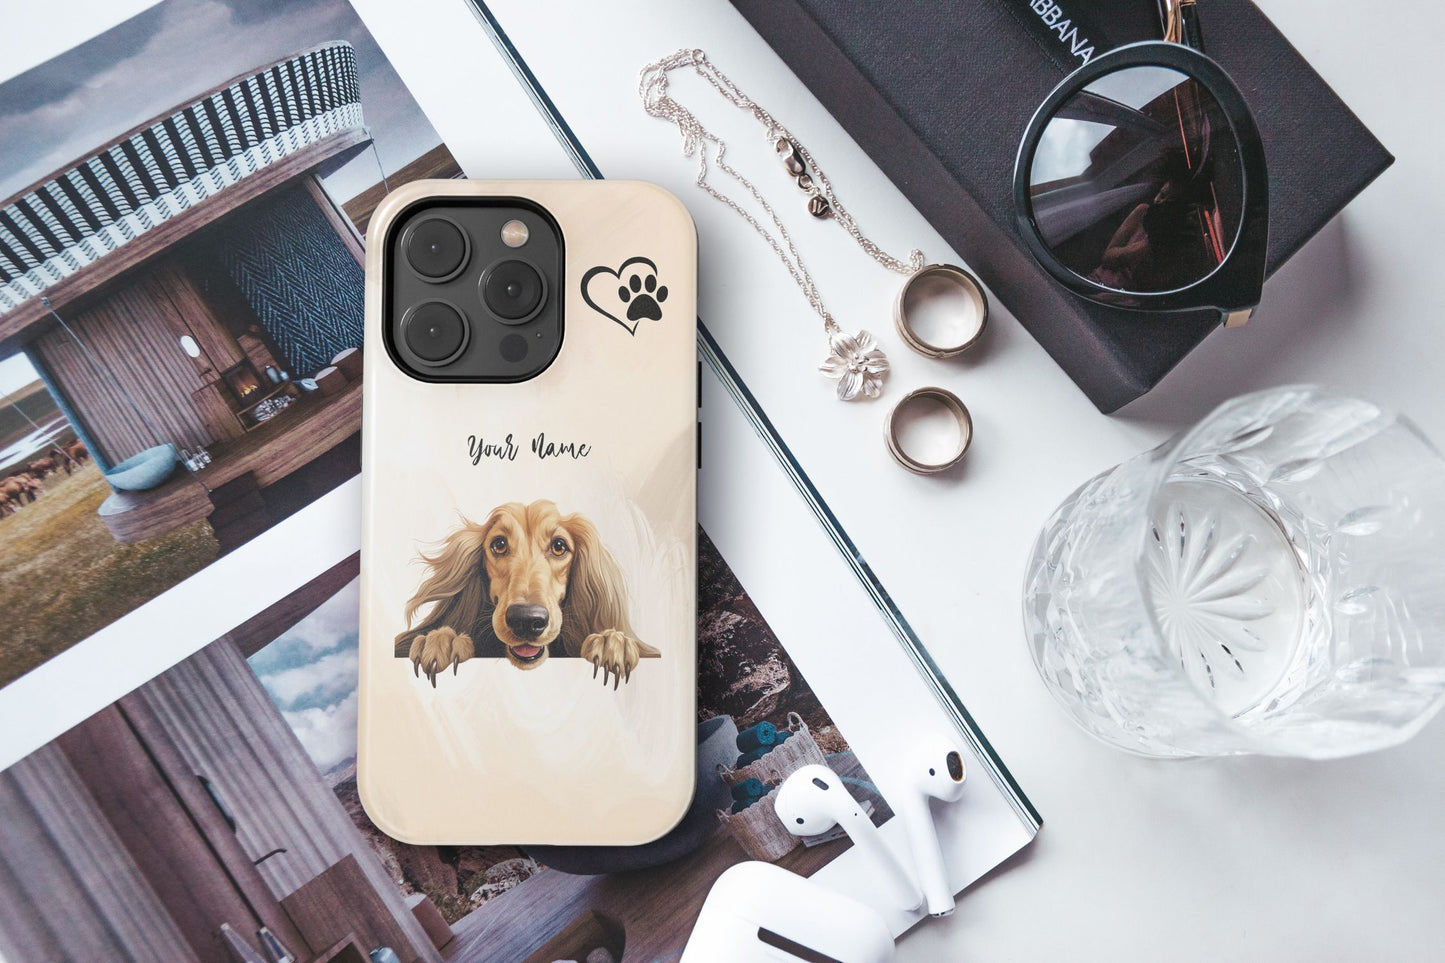 Afghan Hound Dog Phone - iPhone